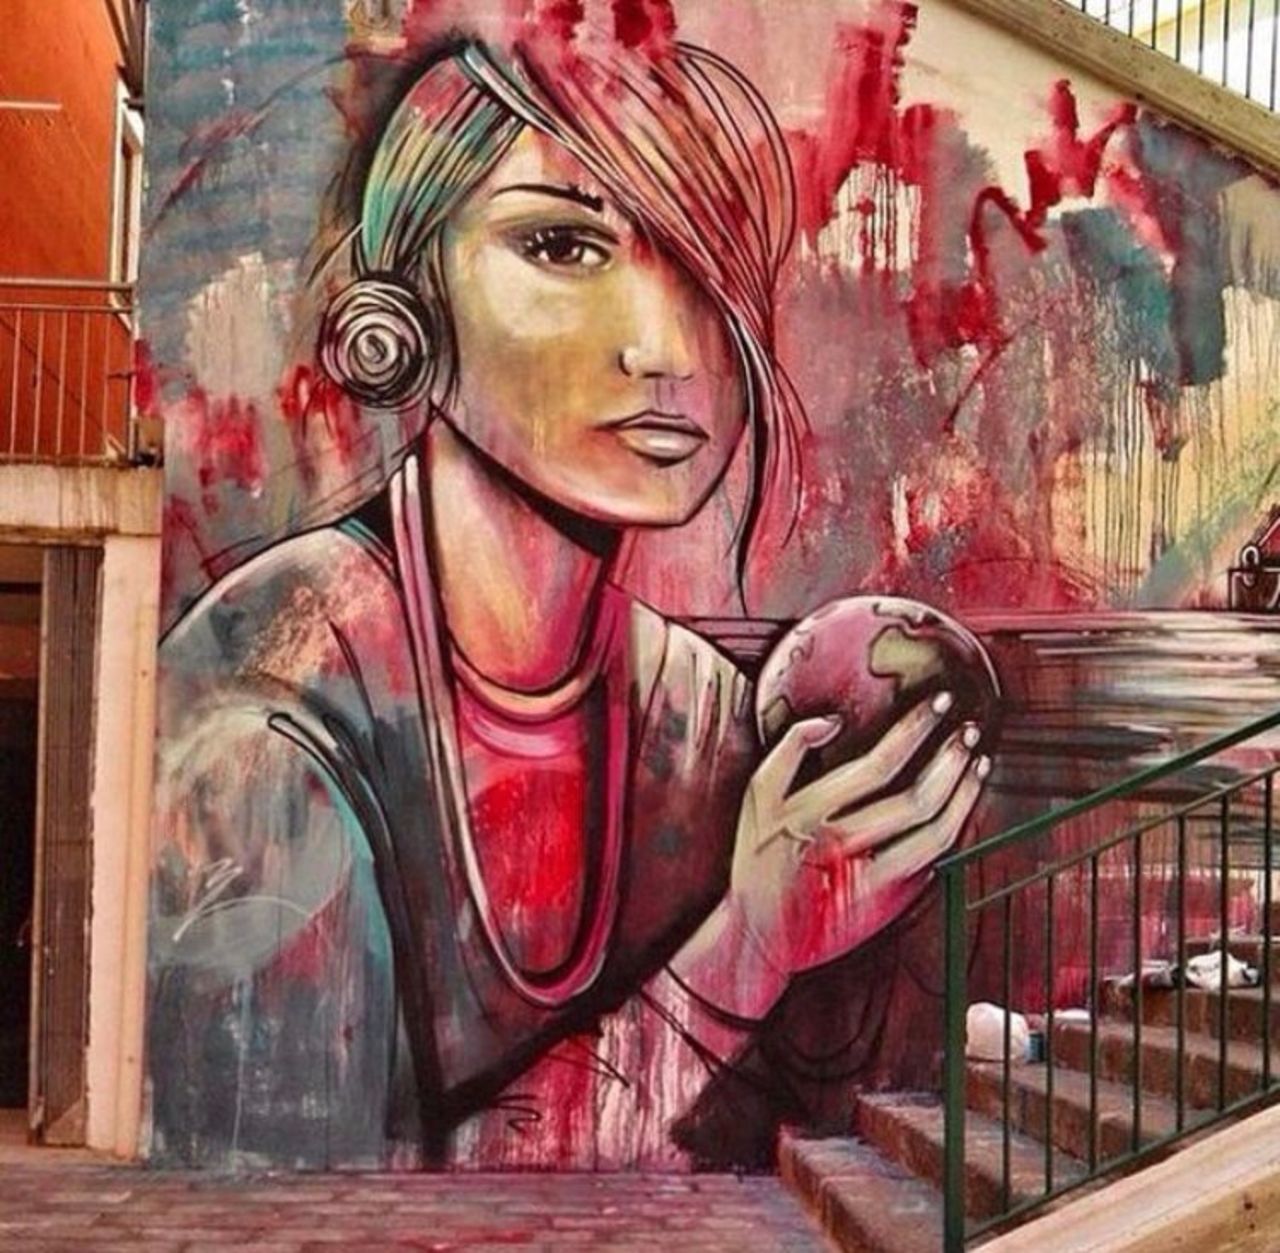 New work by Alice Pasquini #streetart #mural #graffiti #art https://t.co/On7J0s1QBC